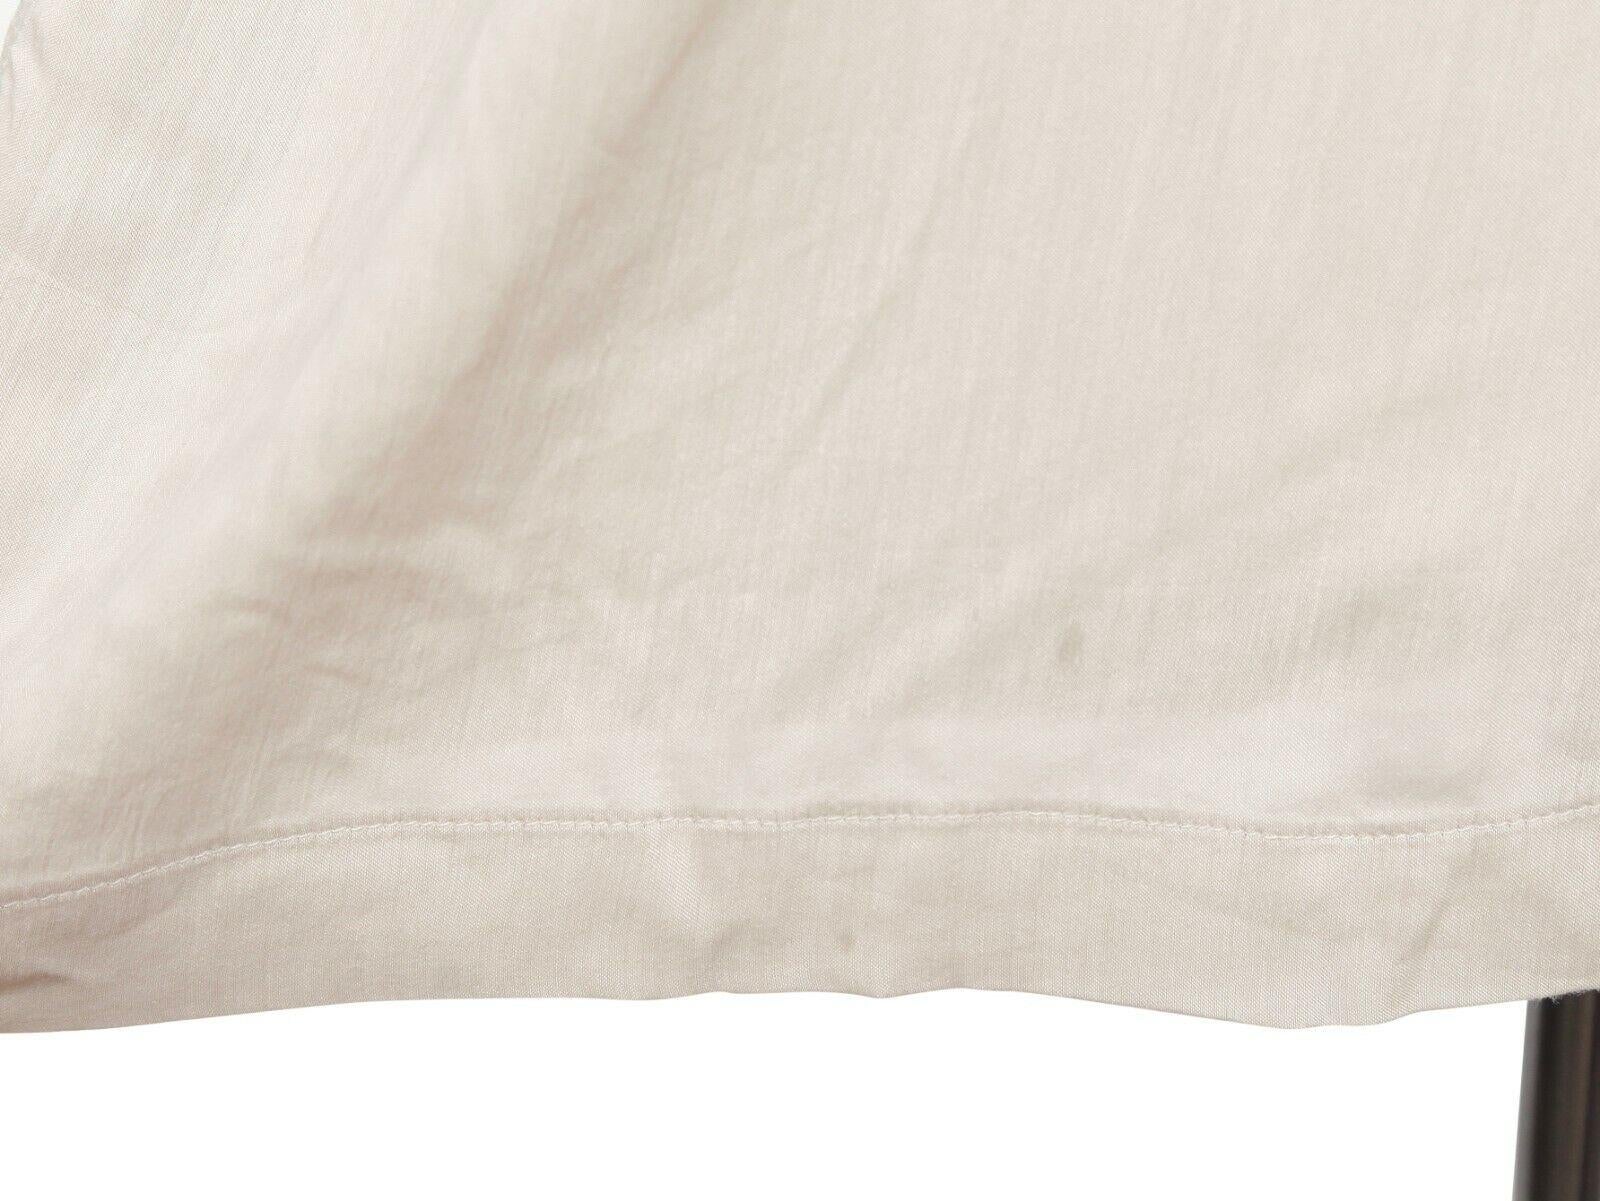 DOLCE & GABBANA Sleeveless Shirt Top Beige Buttons Viscose Silk Sz 42 For Sale 4